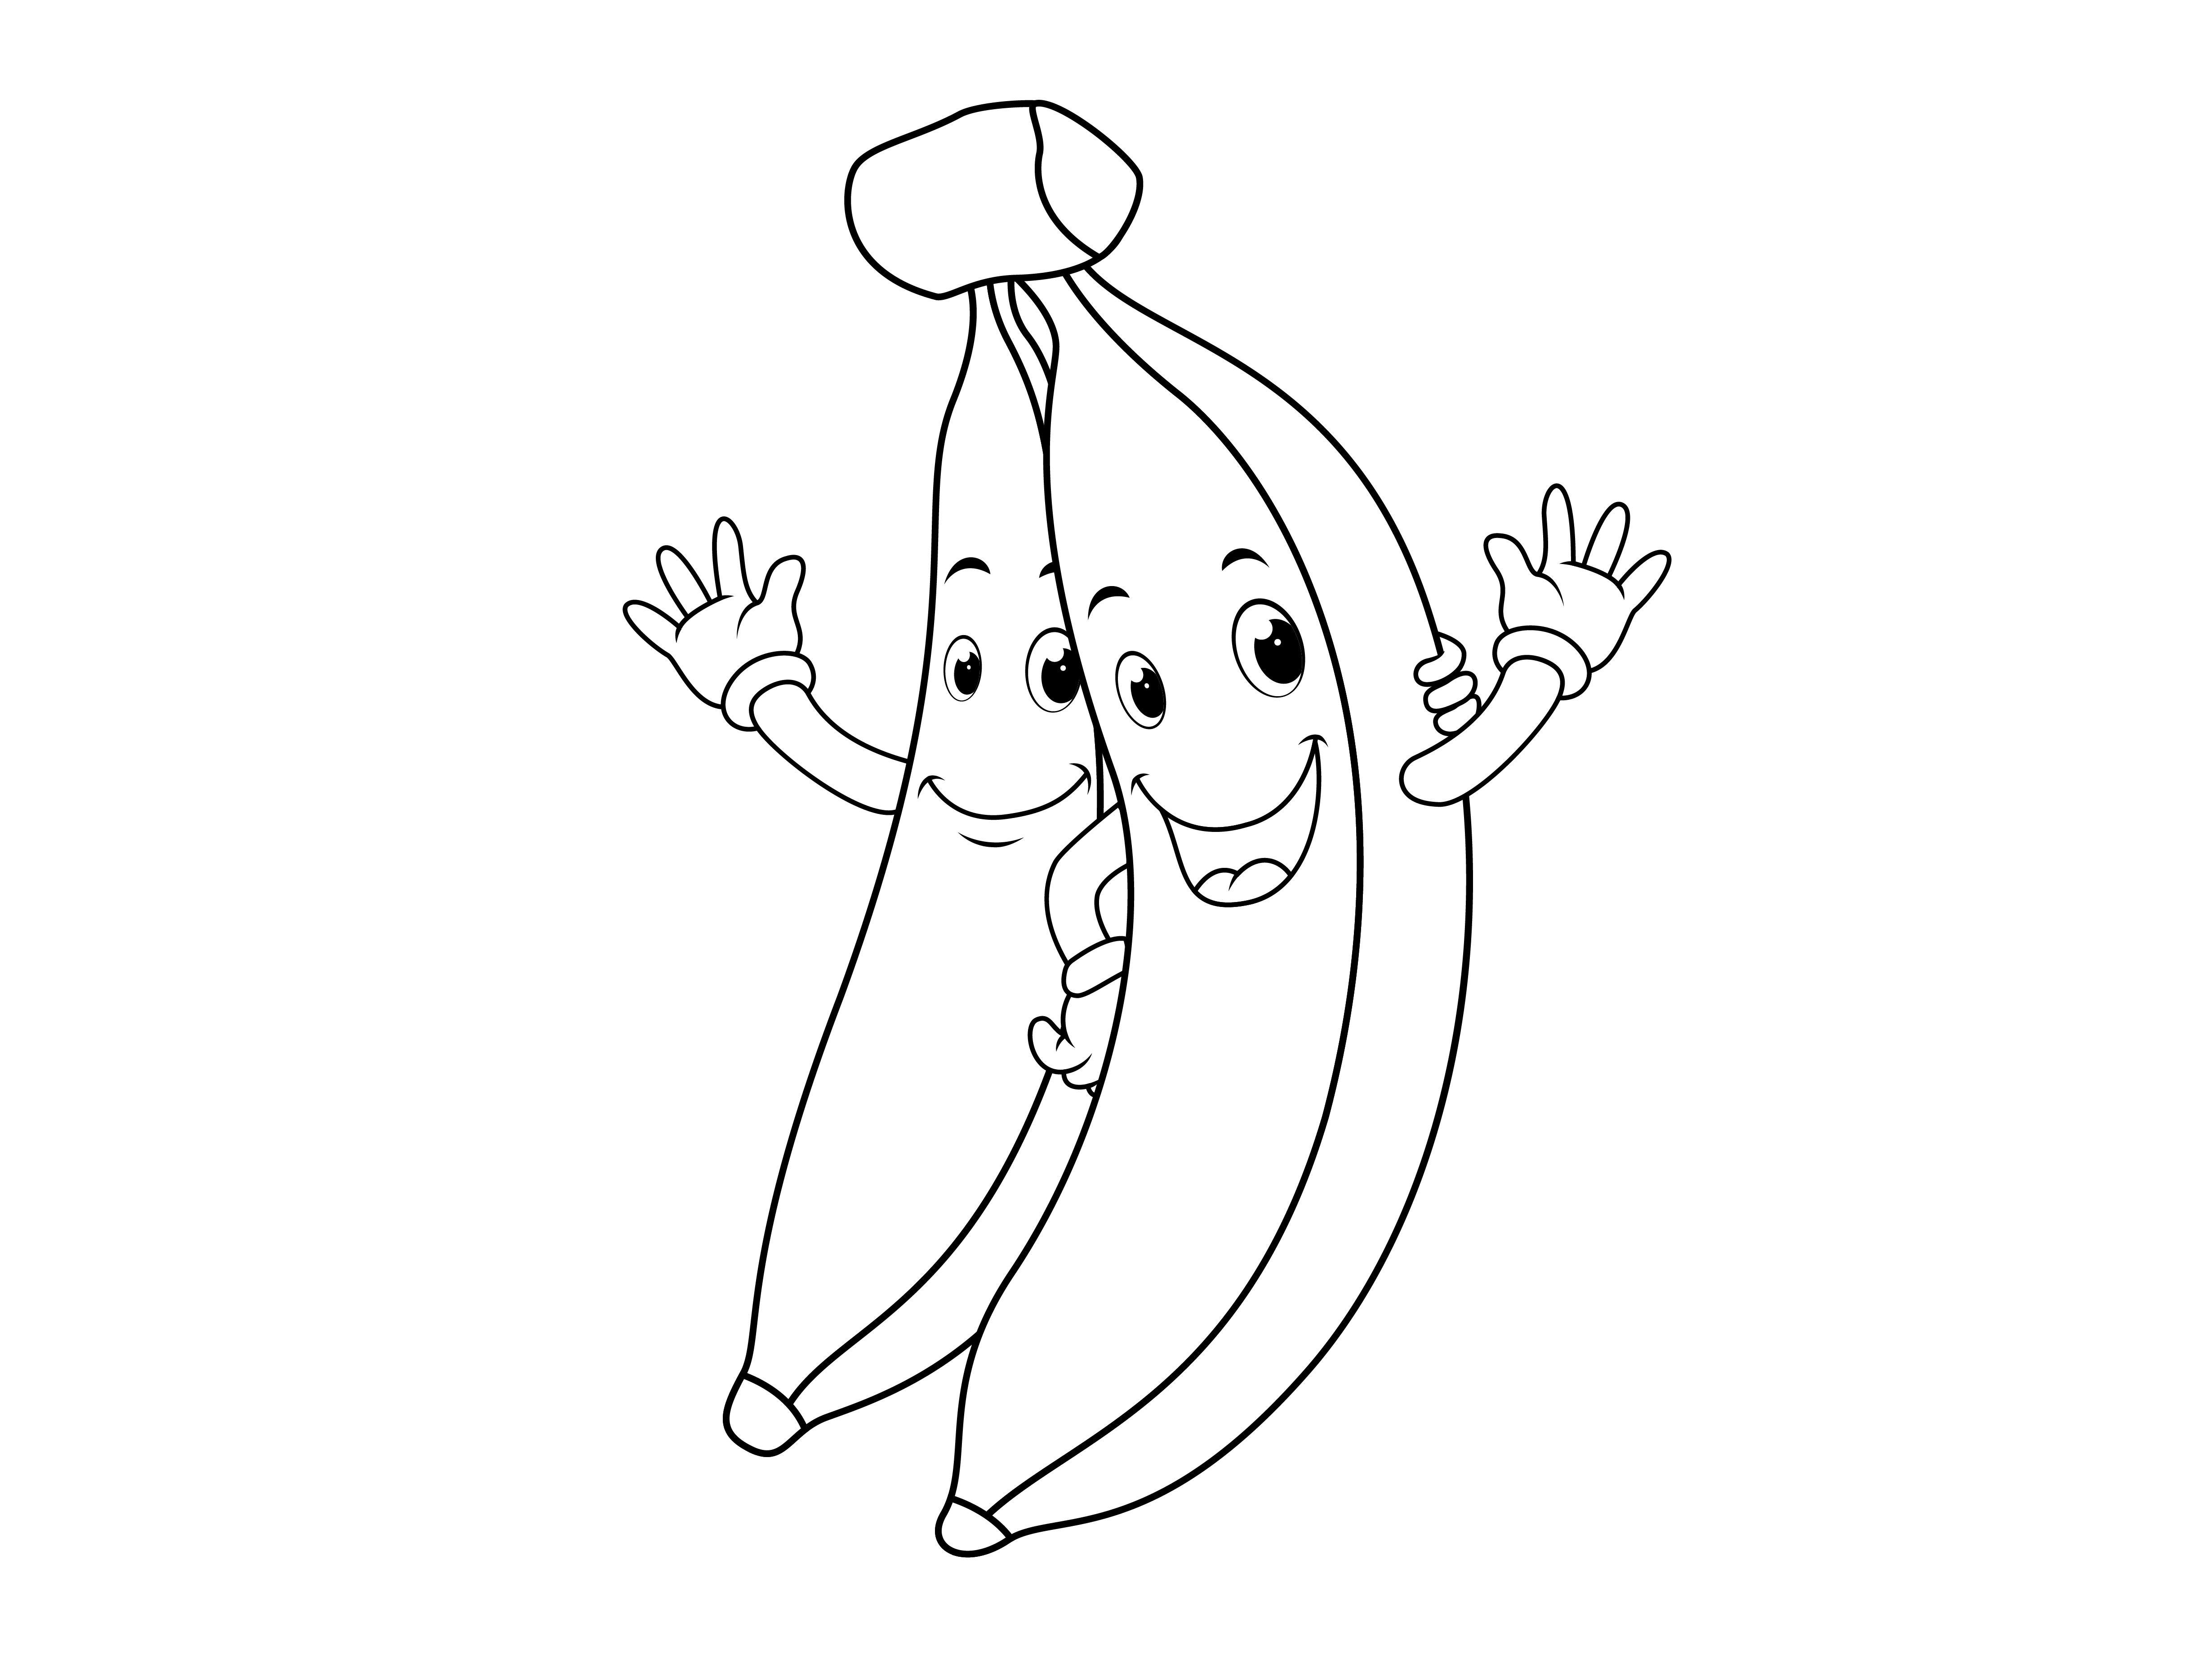 Раскраска два банана с лицами машут руками формата А4 в высоком качестве